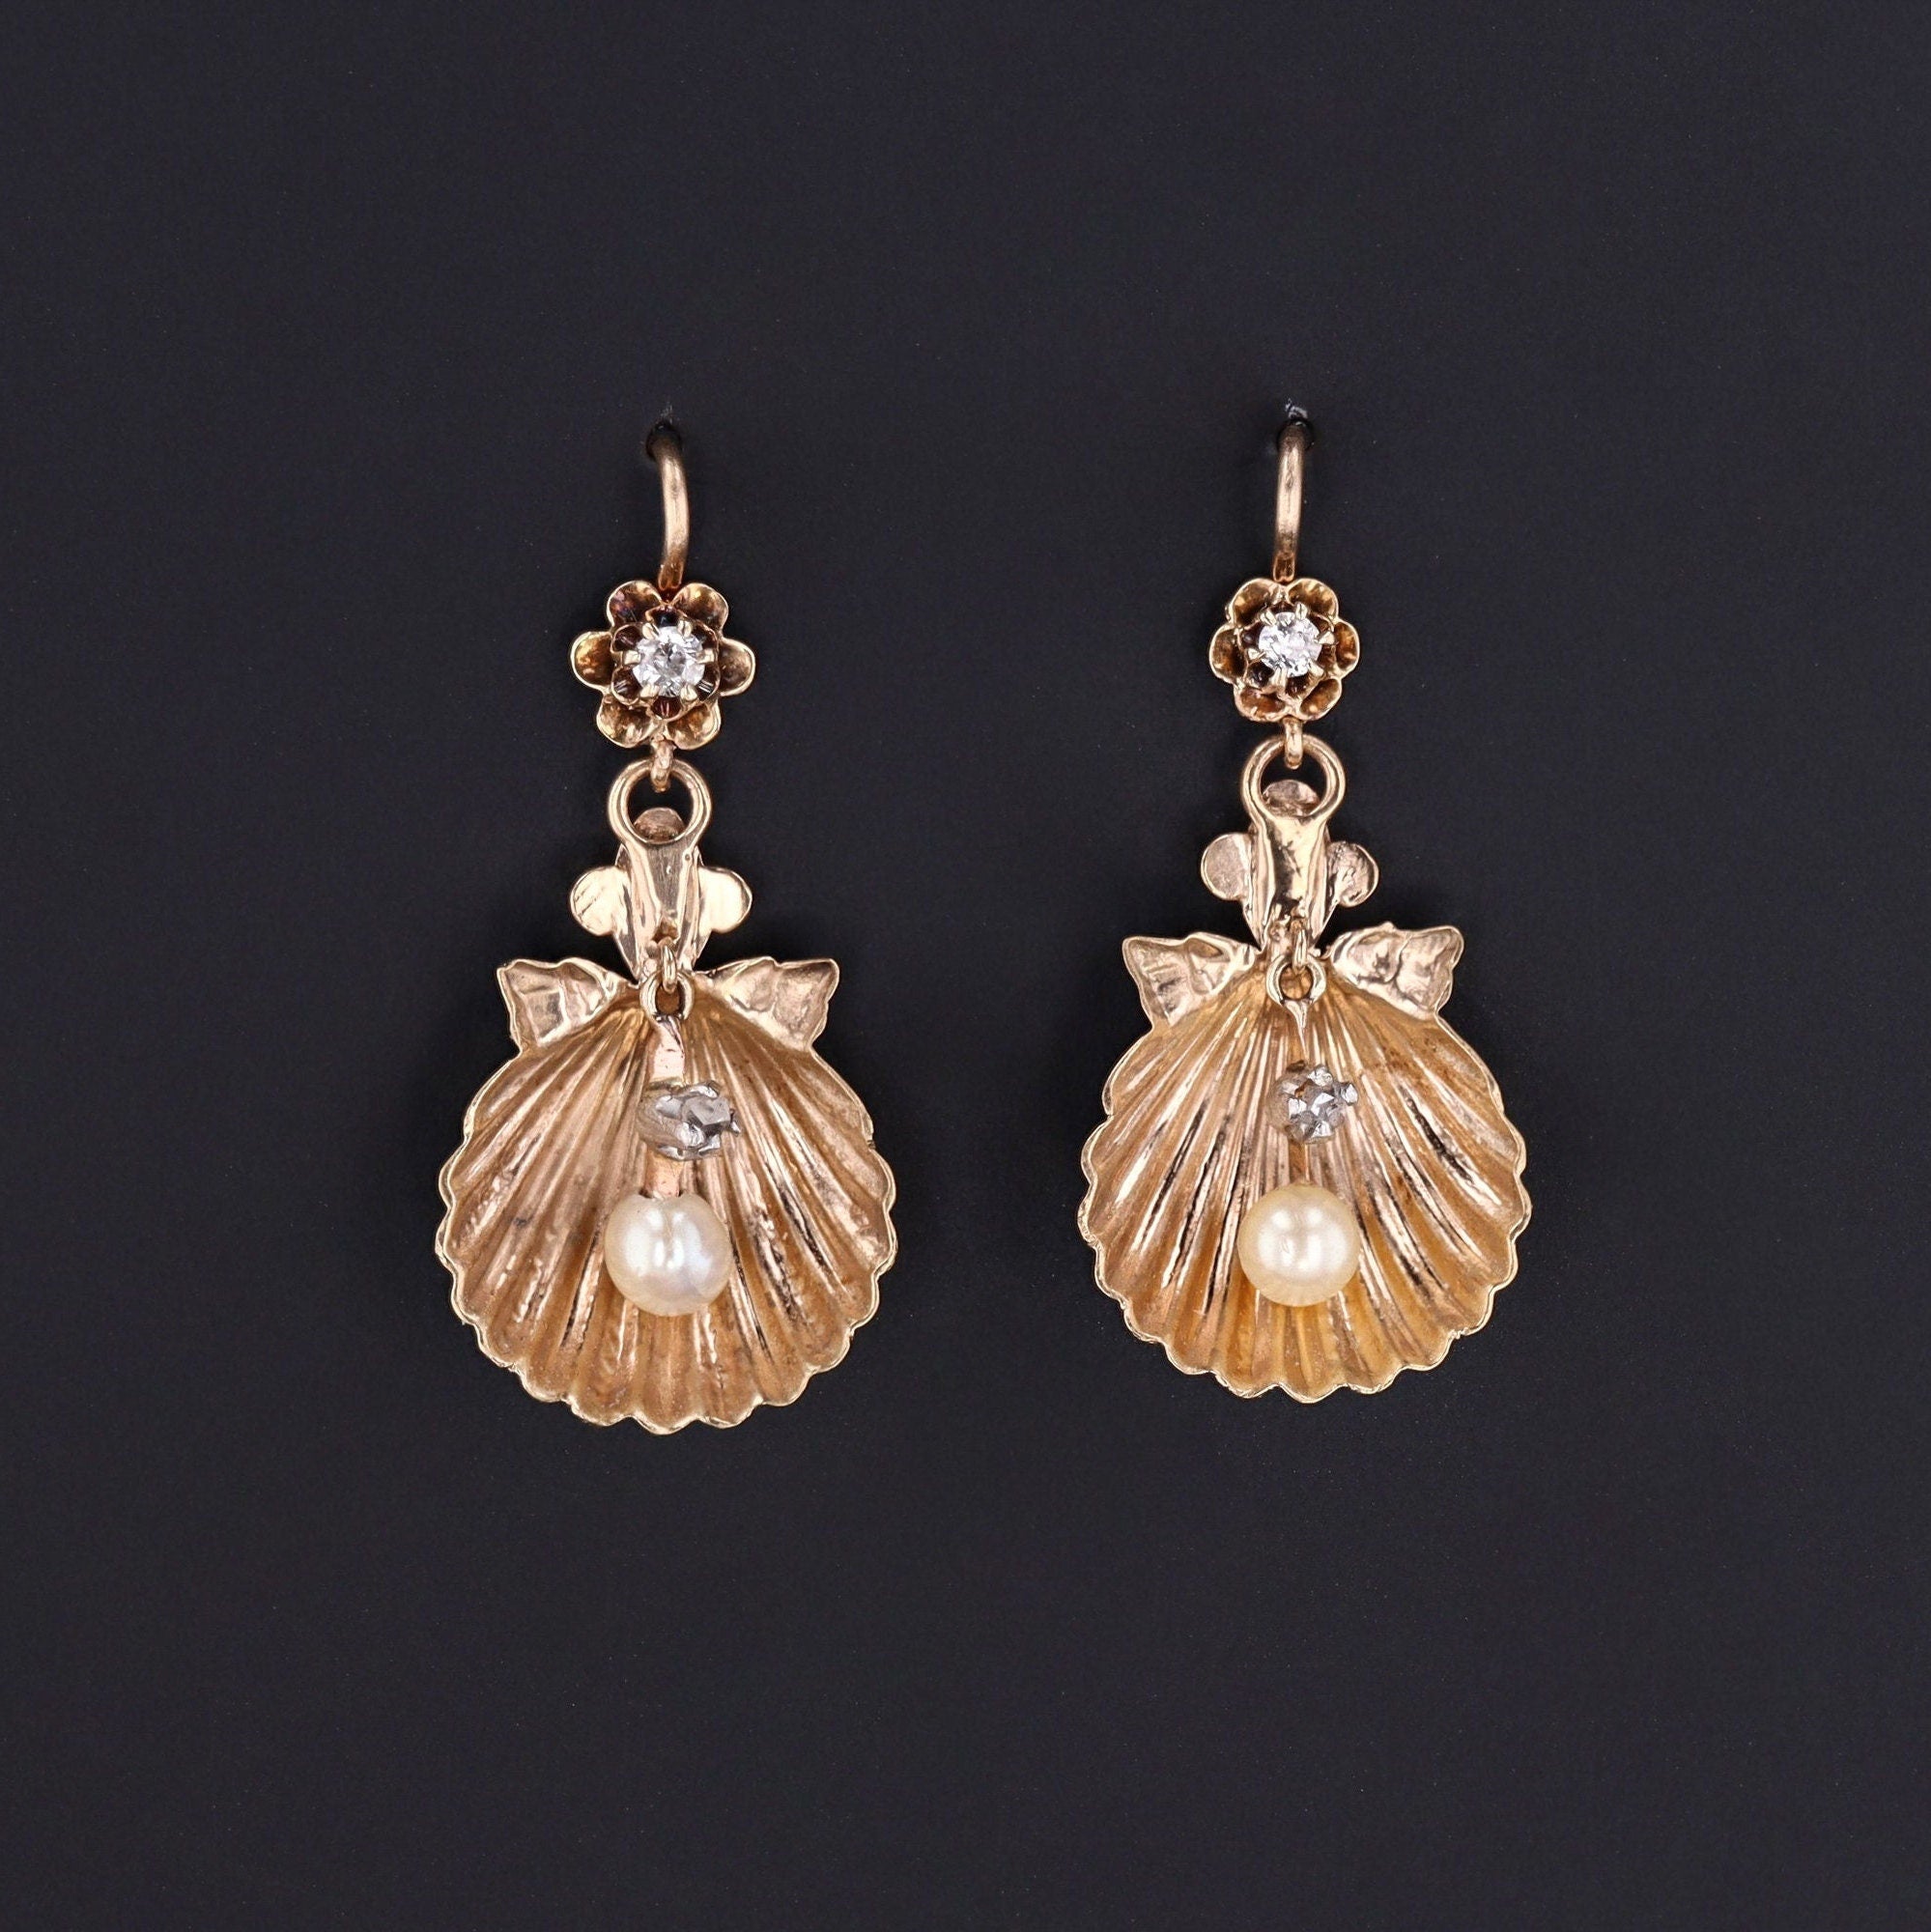 Antique Shell Earrings | 14k Gold Diamond & Pearl Earrings 